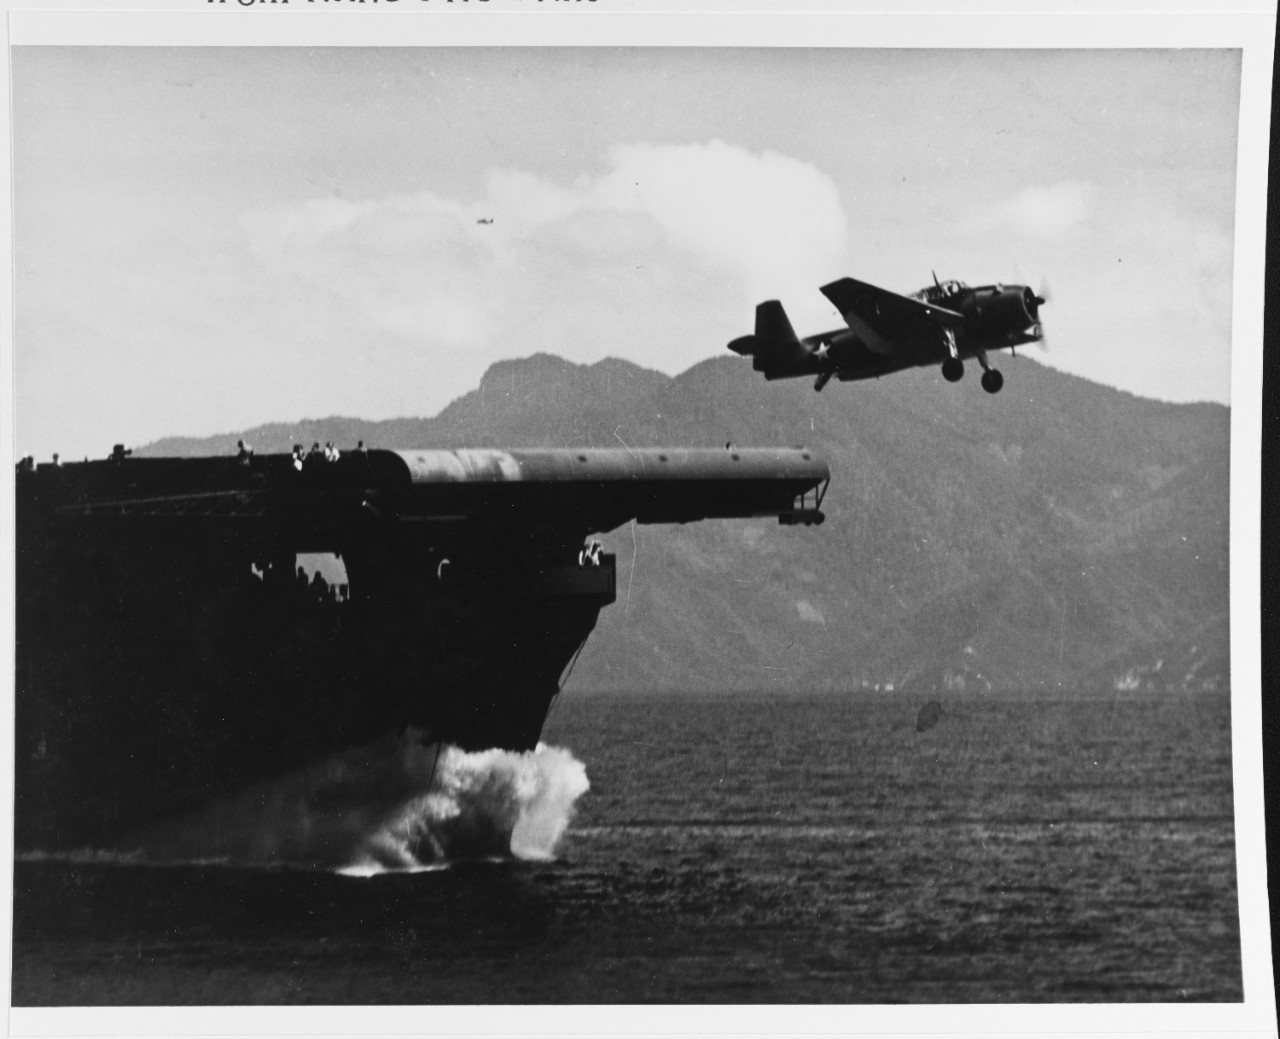 Grumman TBF-1 "Avenger" torpedo bomber